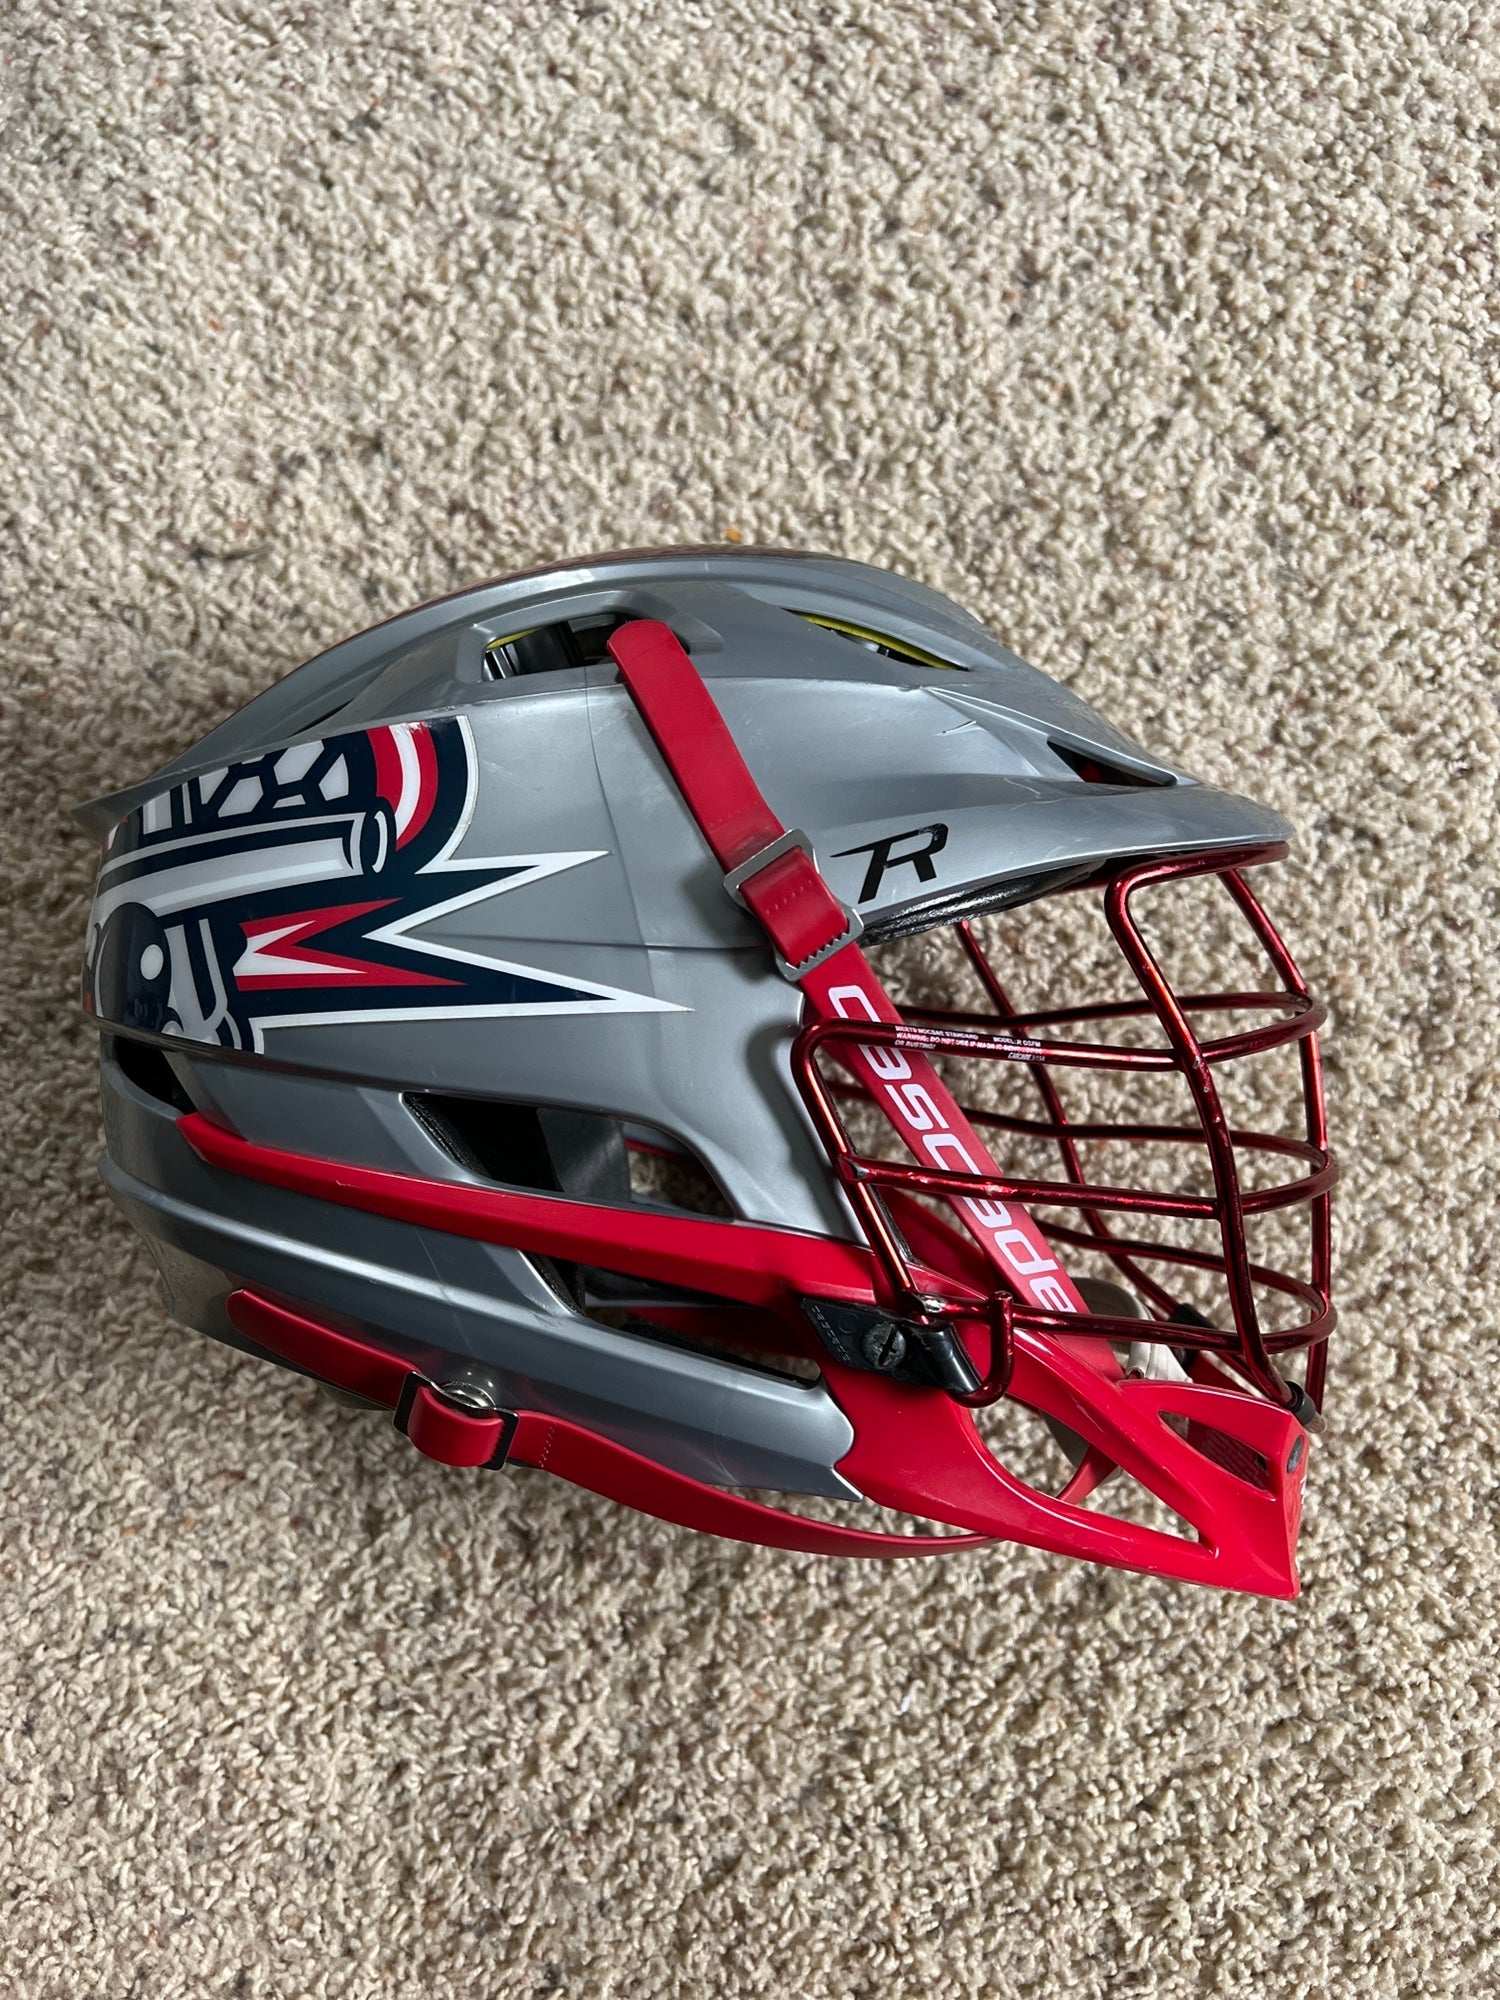 Cannons Lacrosse Helmet | SidelineSwap